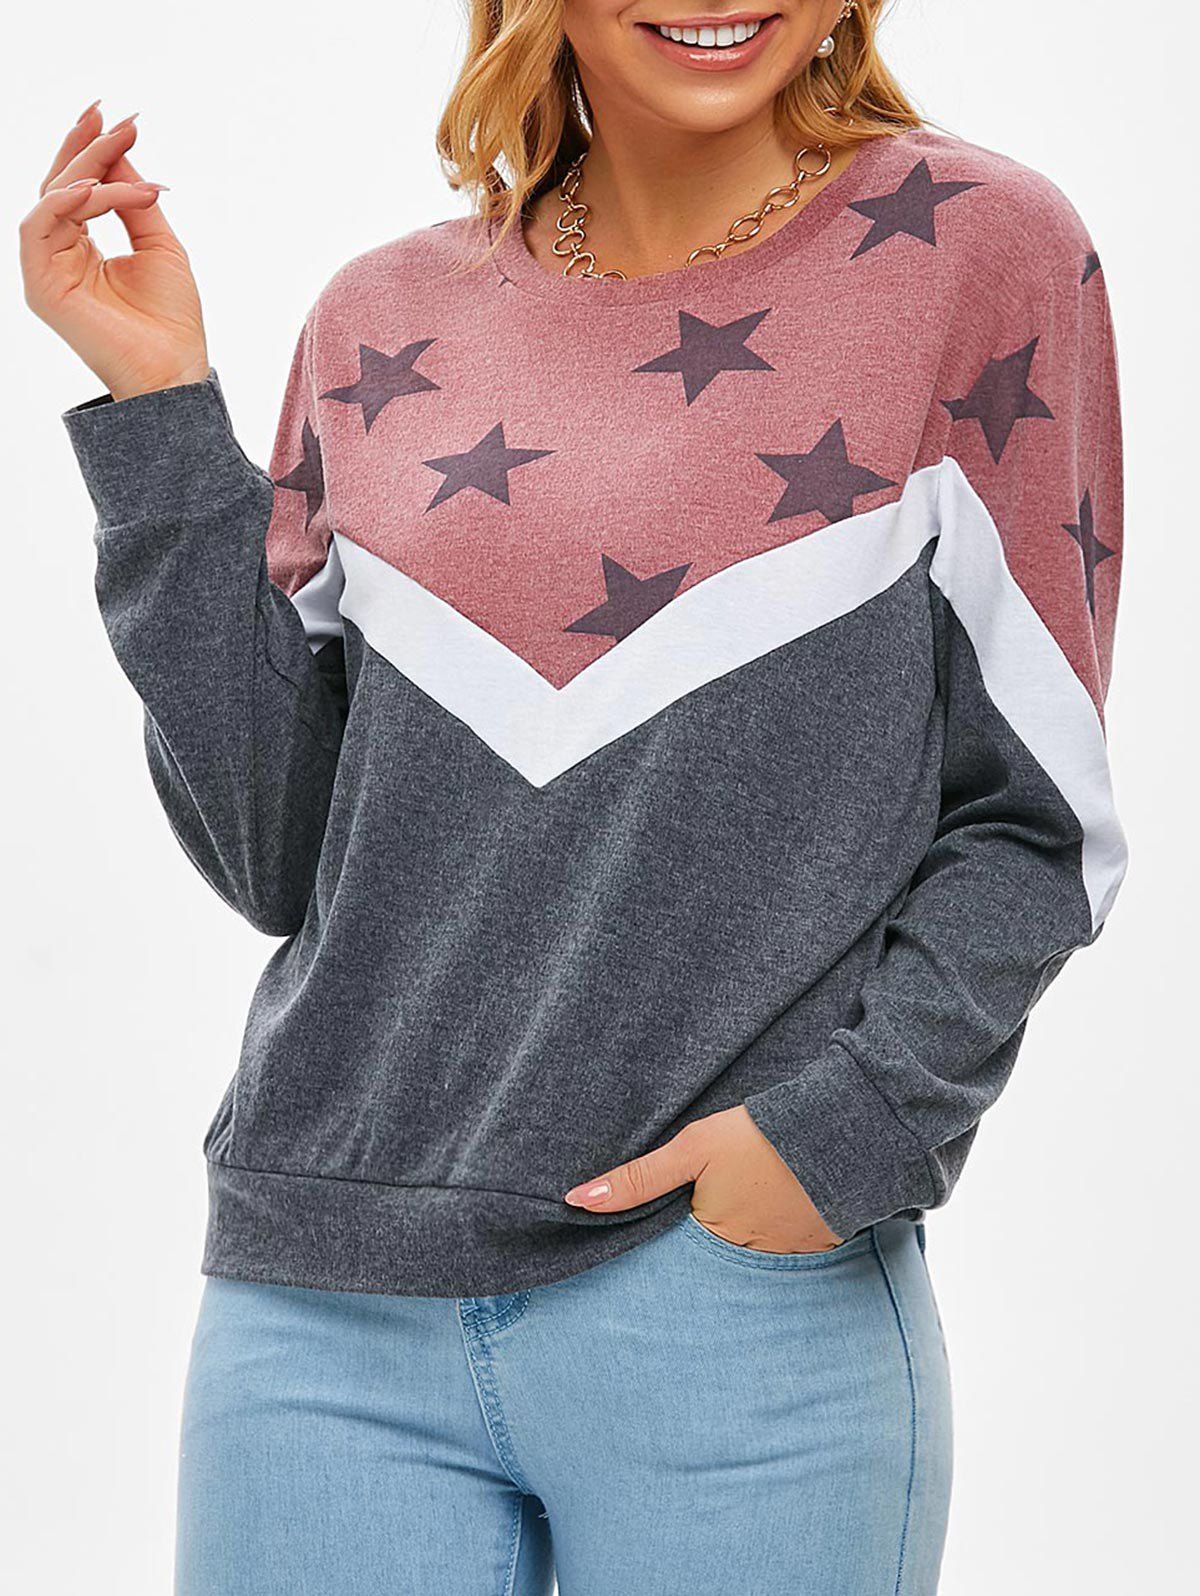 Sweat-shirt Tricoté Etoile en Blocs de Couleurs - Rose clair XL